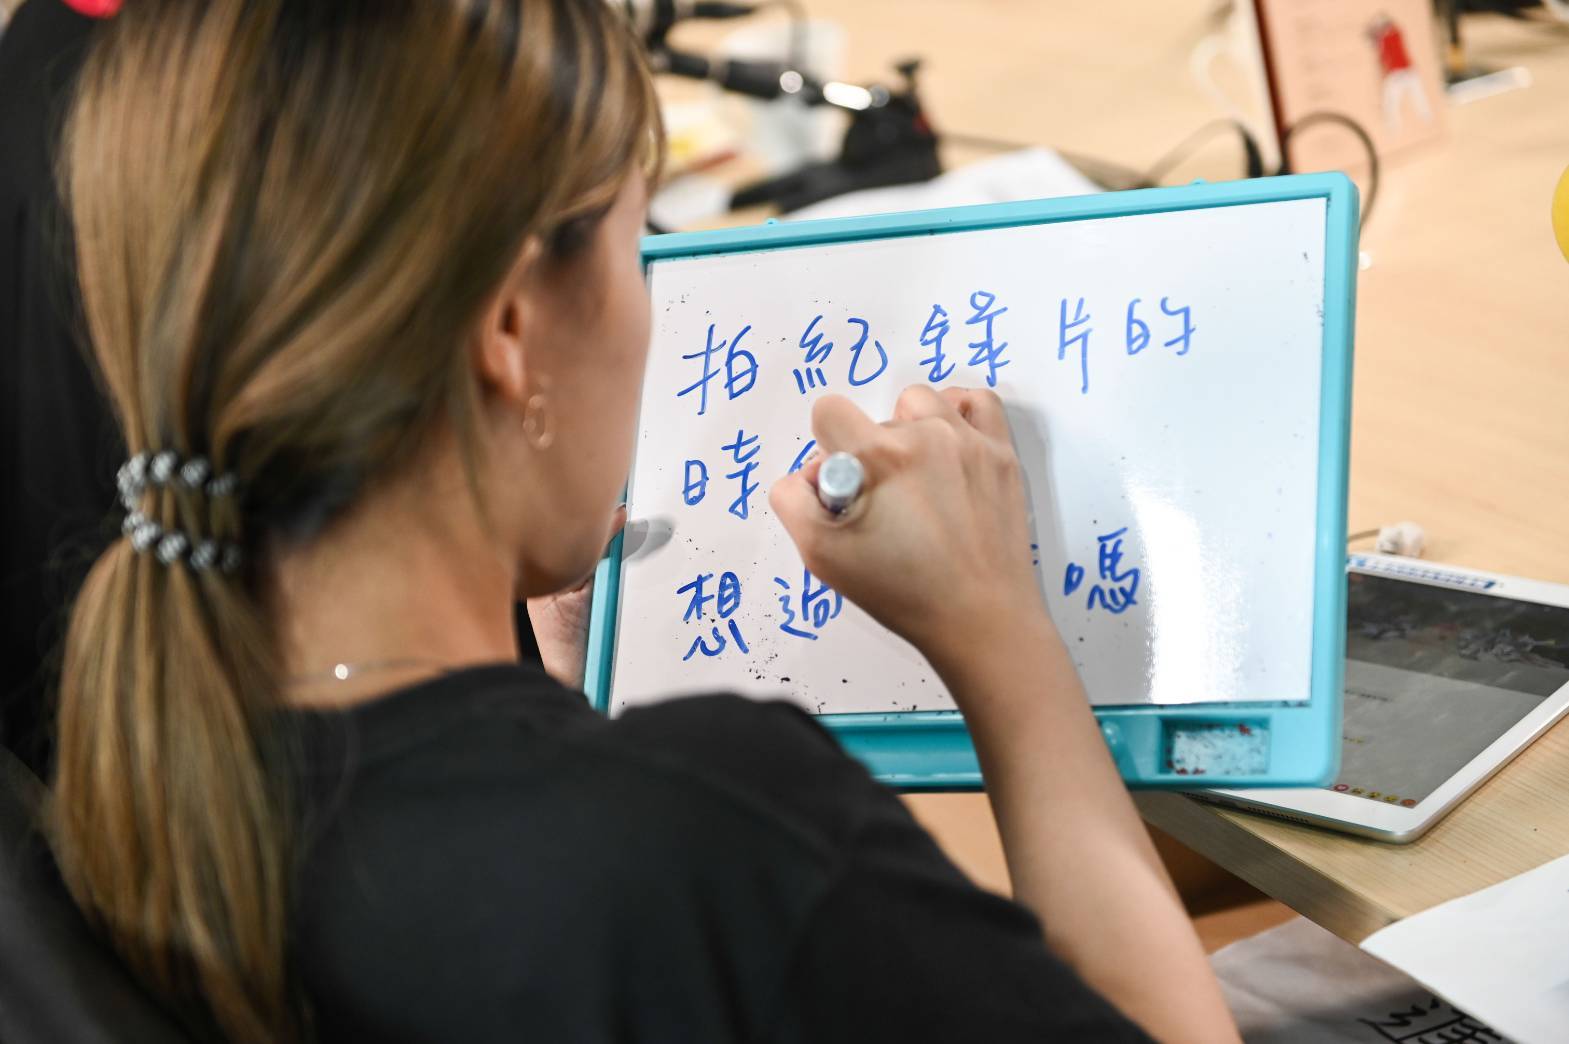 嶺東科技大學負責直播的學生，細心地將粉絲問題寫在白板上提醒主持人